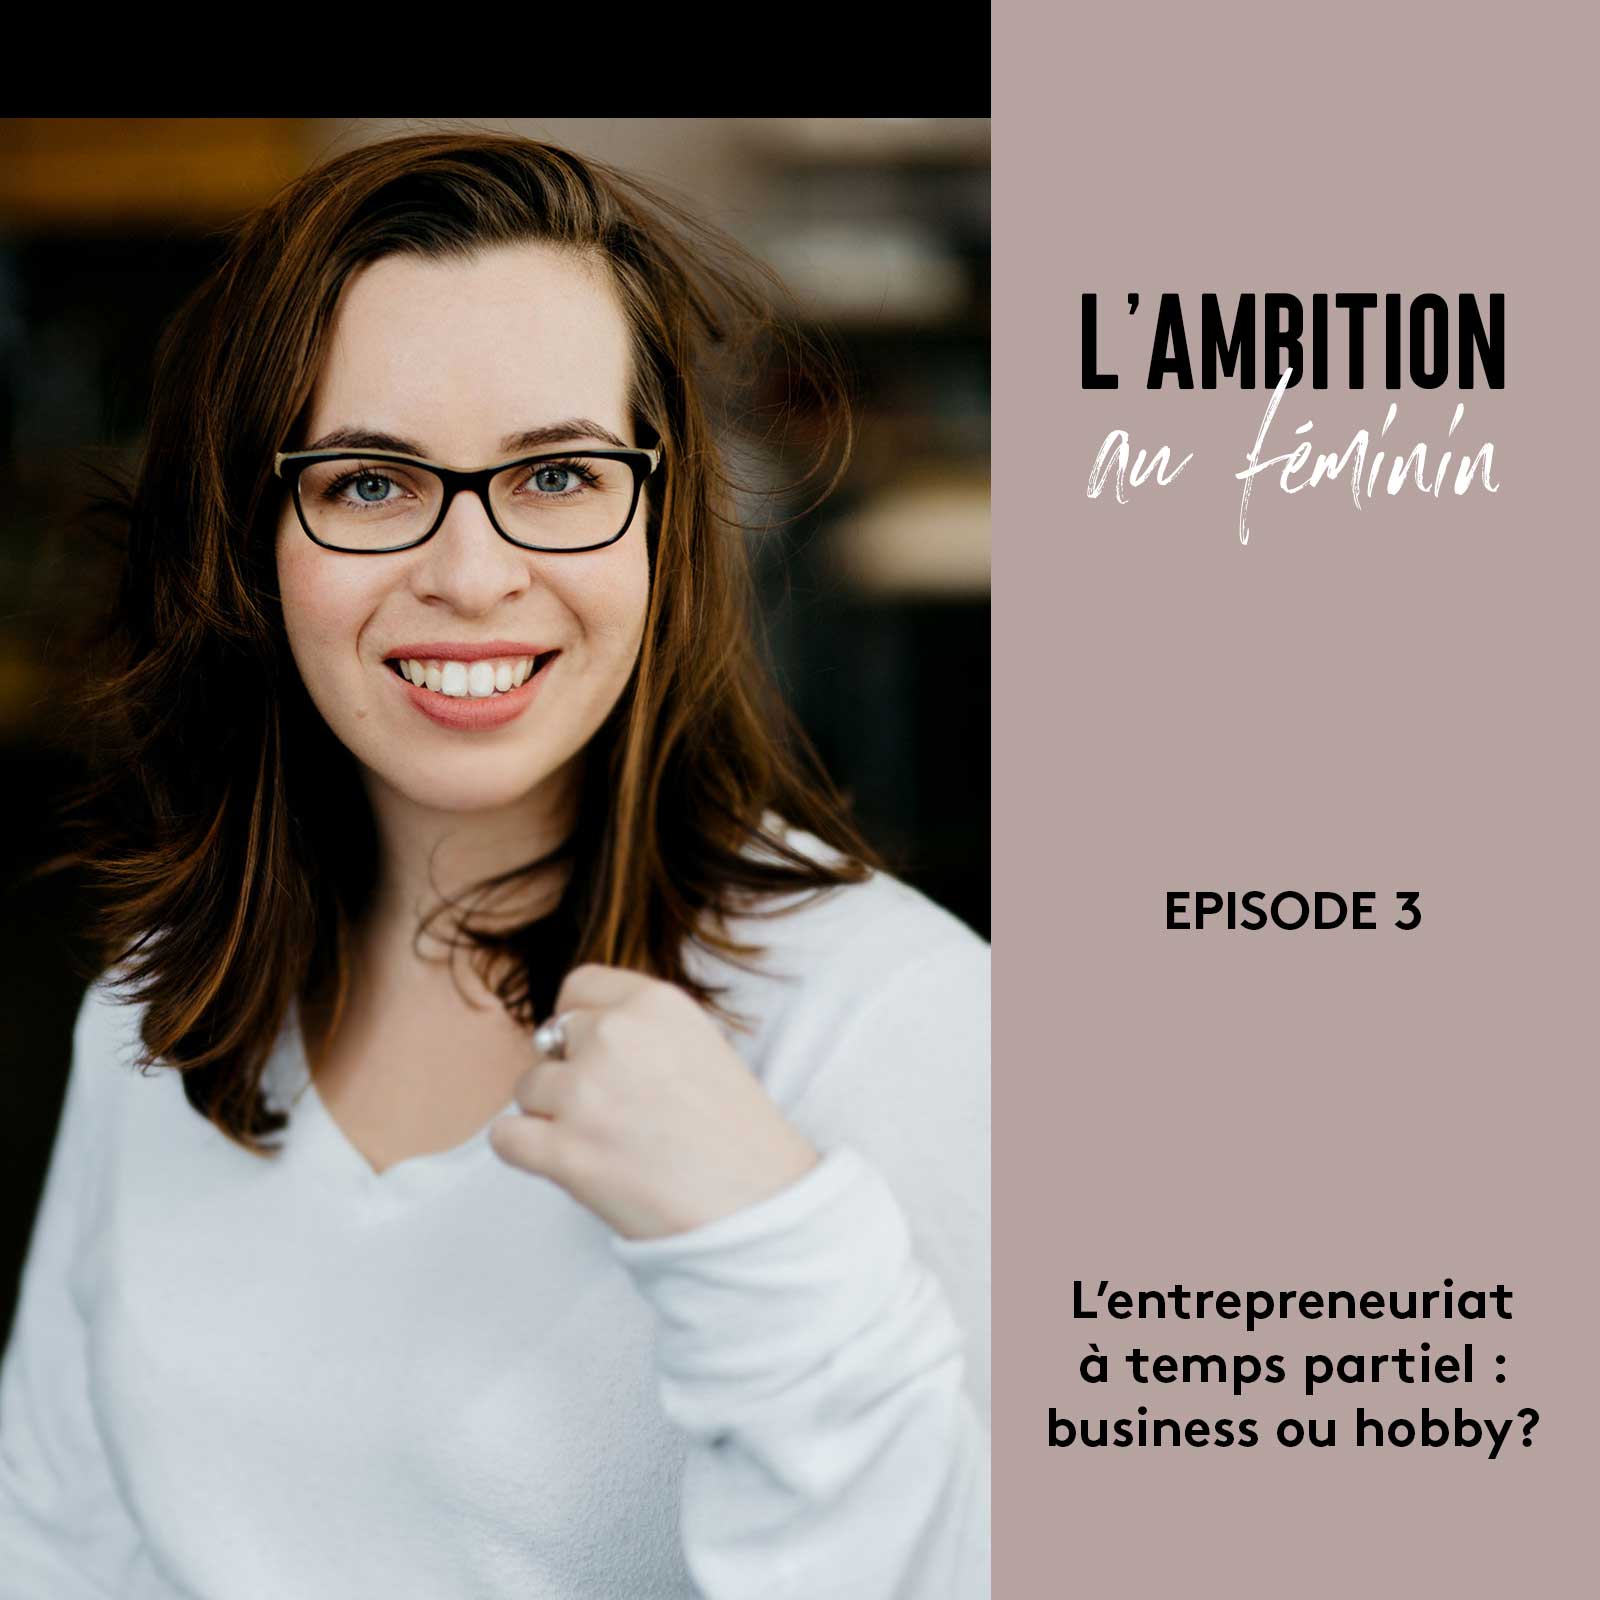 Ep. 3 L’entrepreneuriat à temps partiel : business ou hobby?